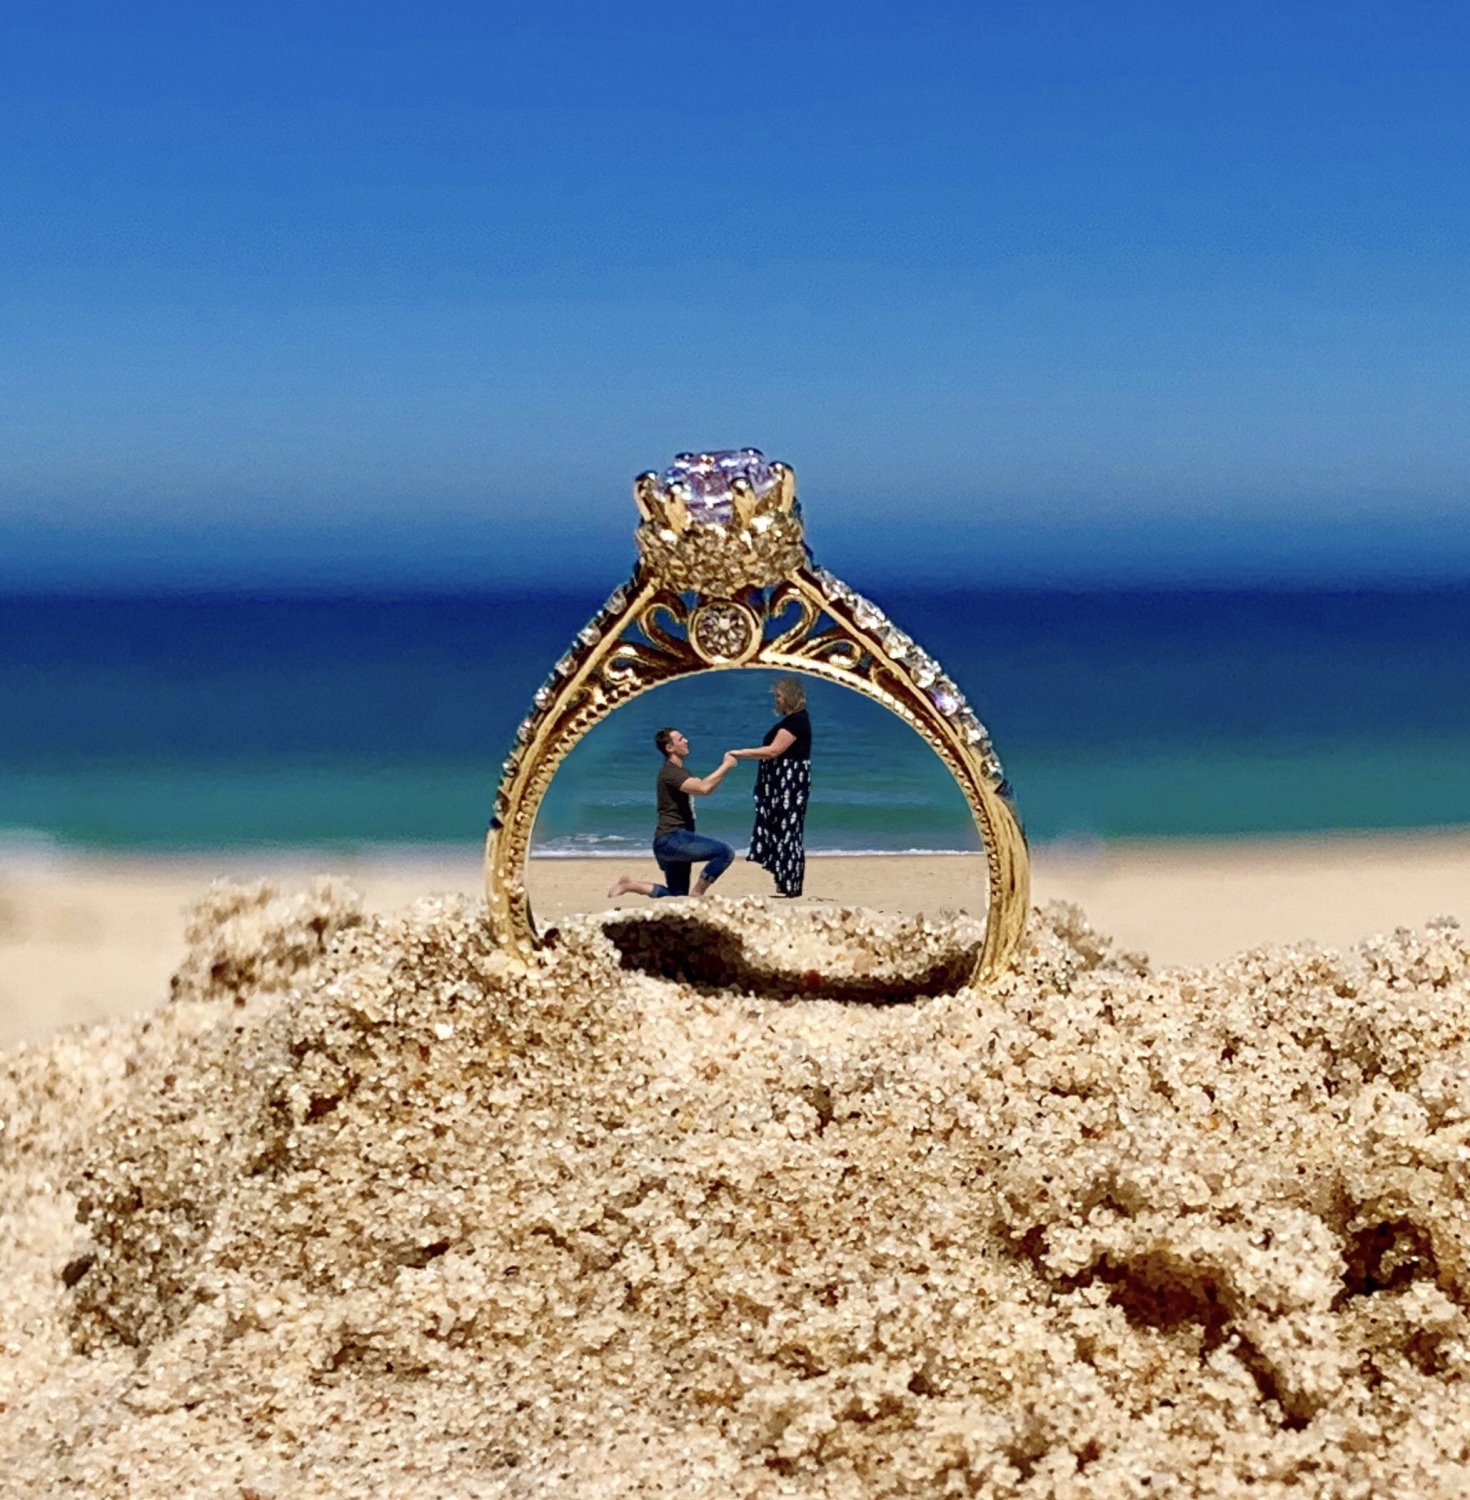 הצעת הנישואים שלי בחוף ט״ו-סופה צרפנוב